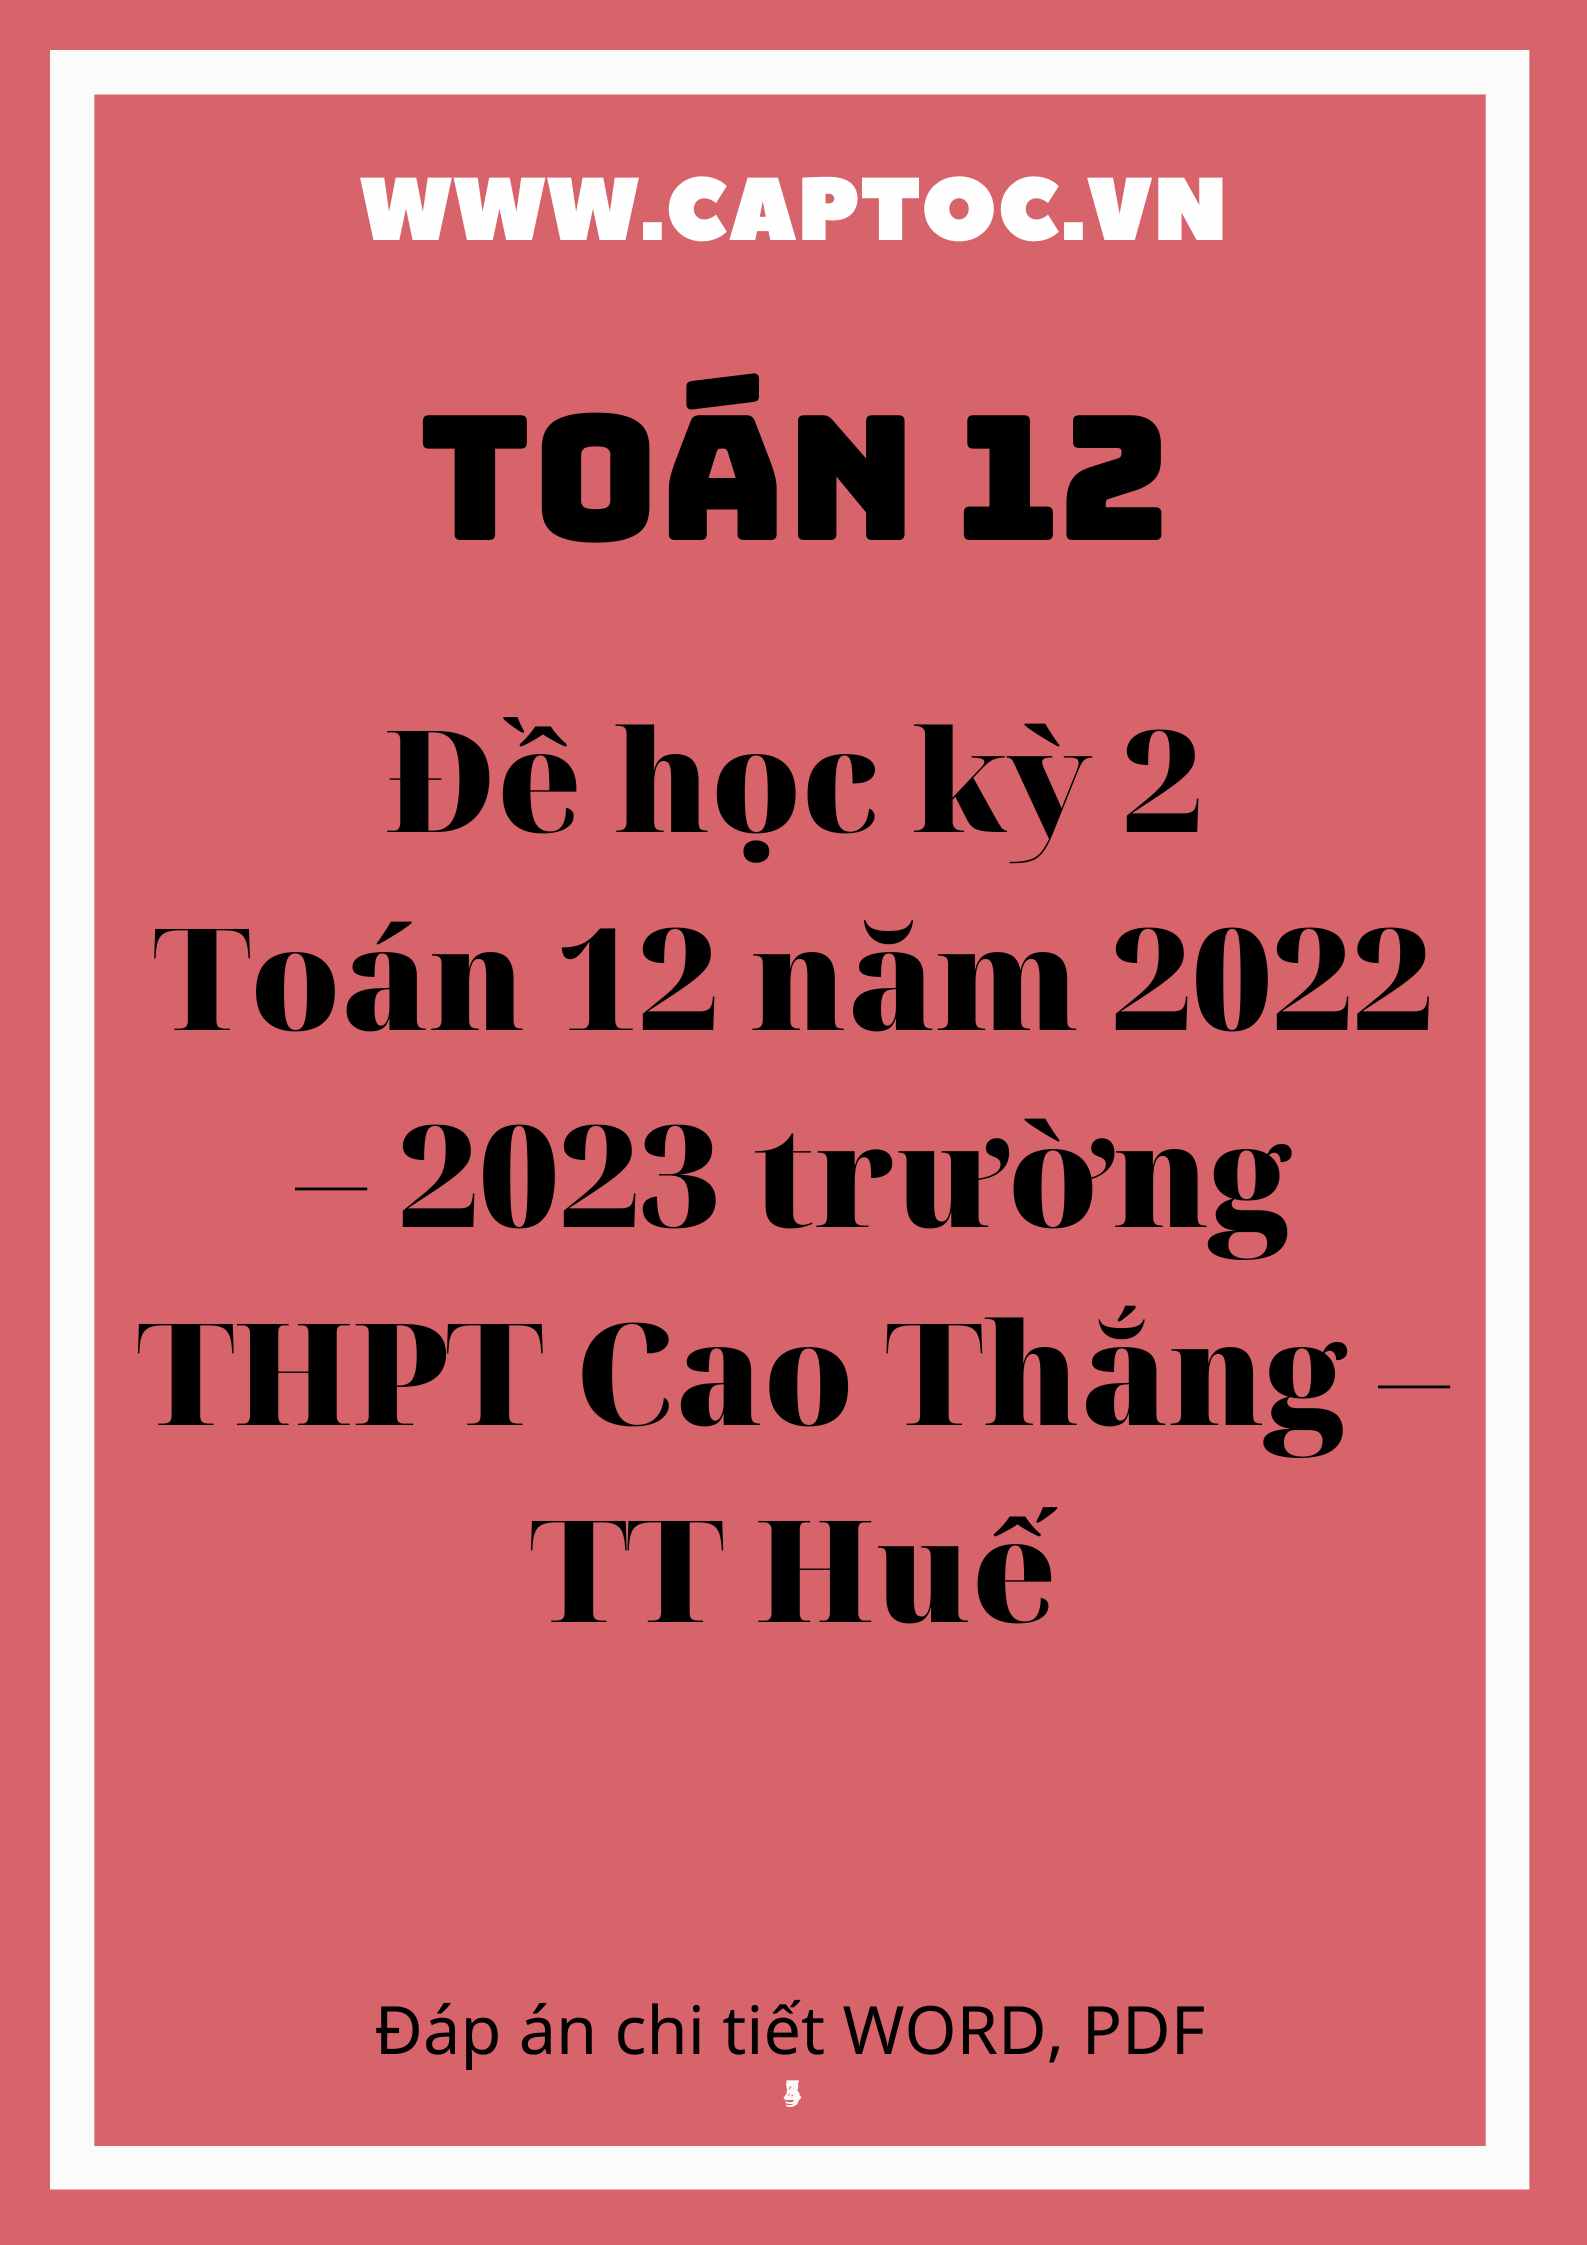 Đề học kỳ 2 Toán 12 năm 2022 – 2023 trường THPT Cao Thắng – TT Huế